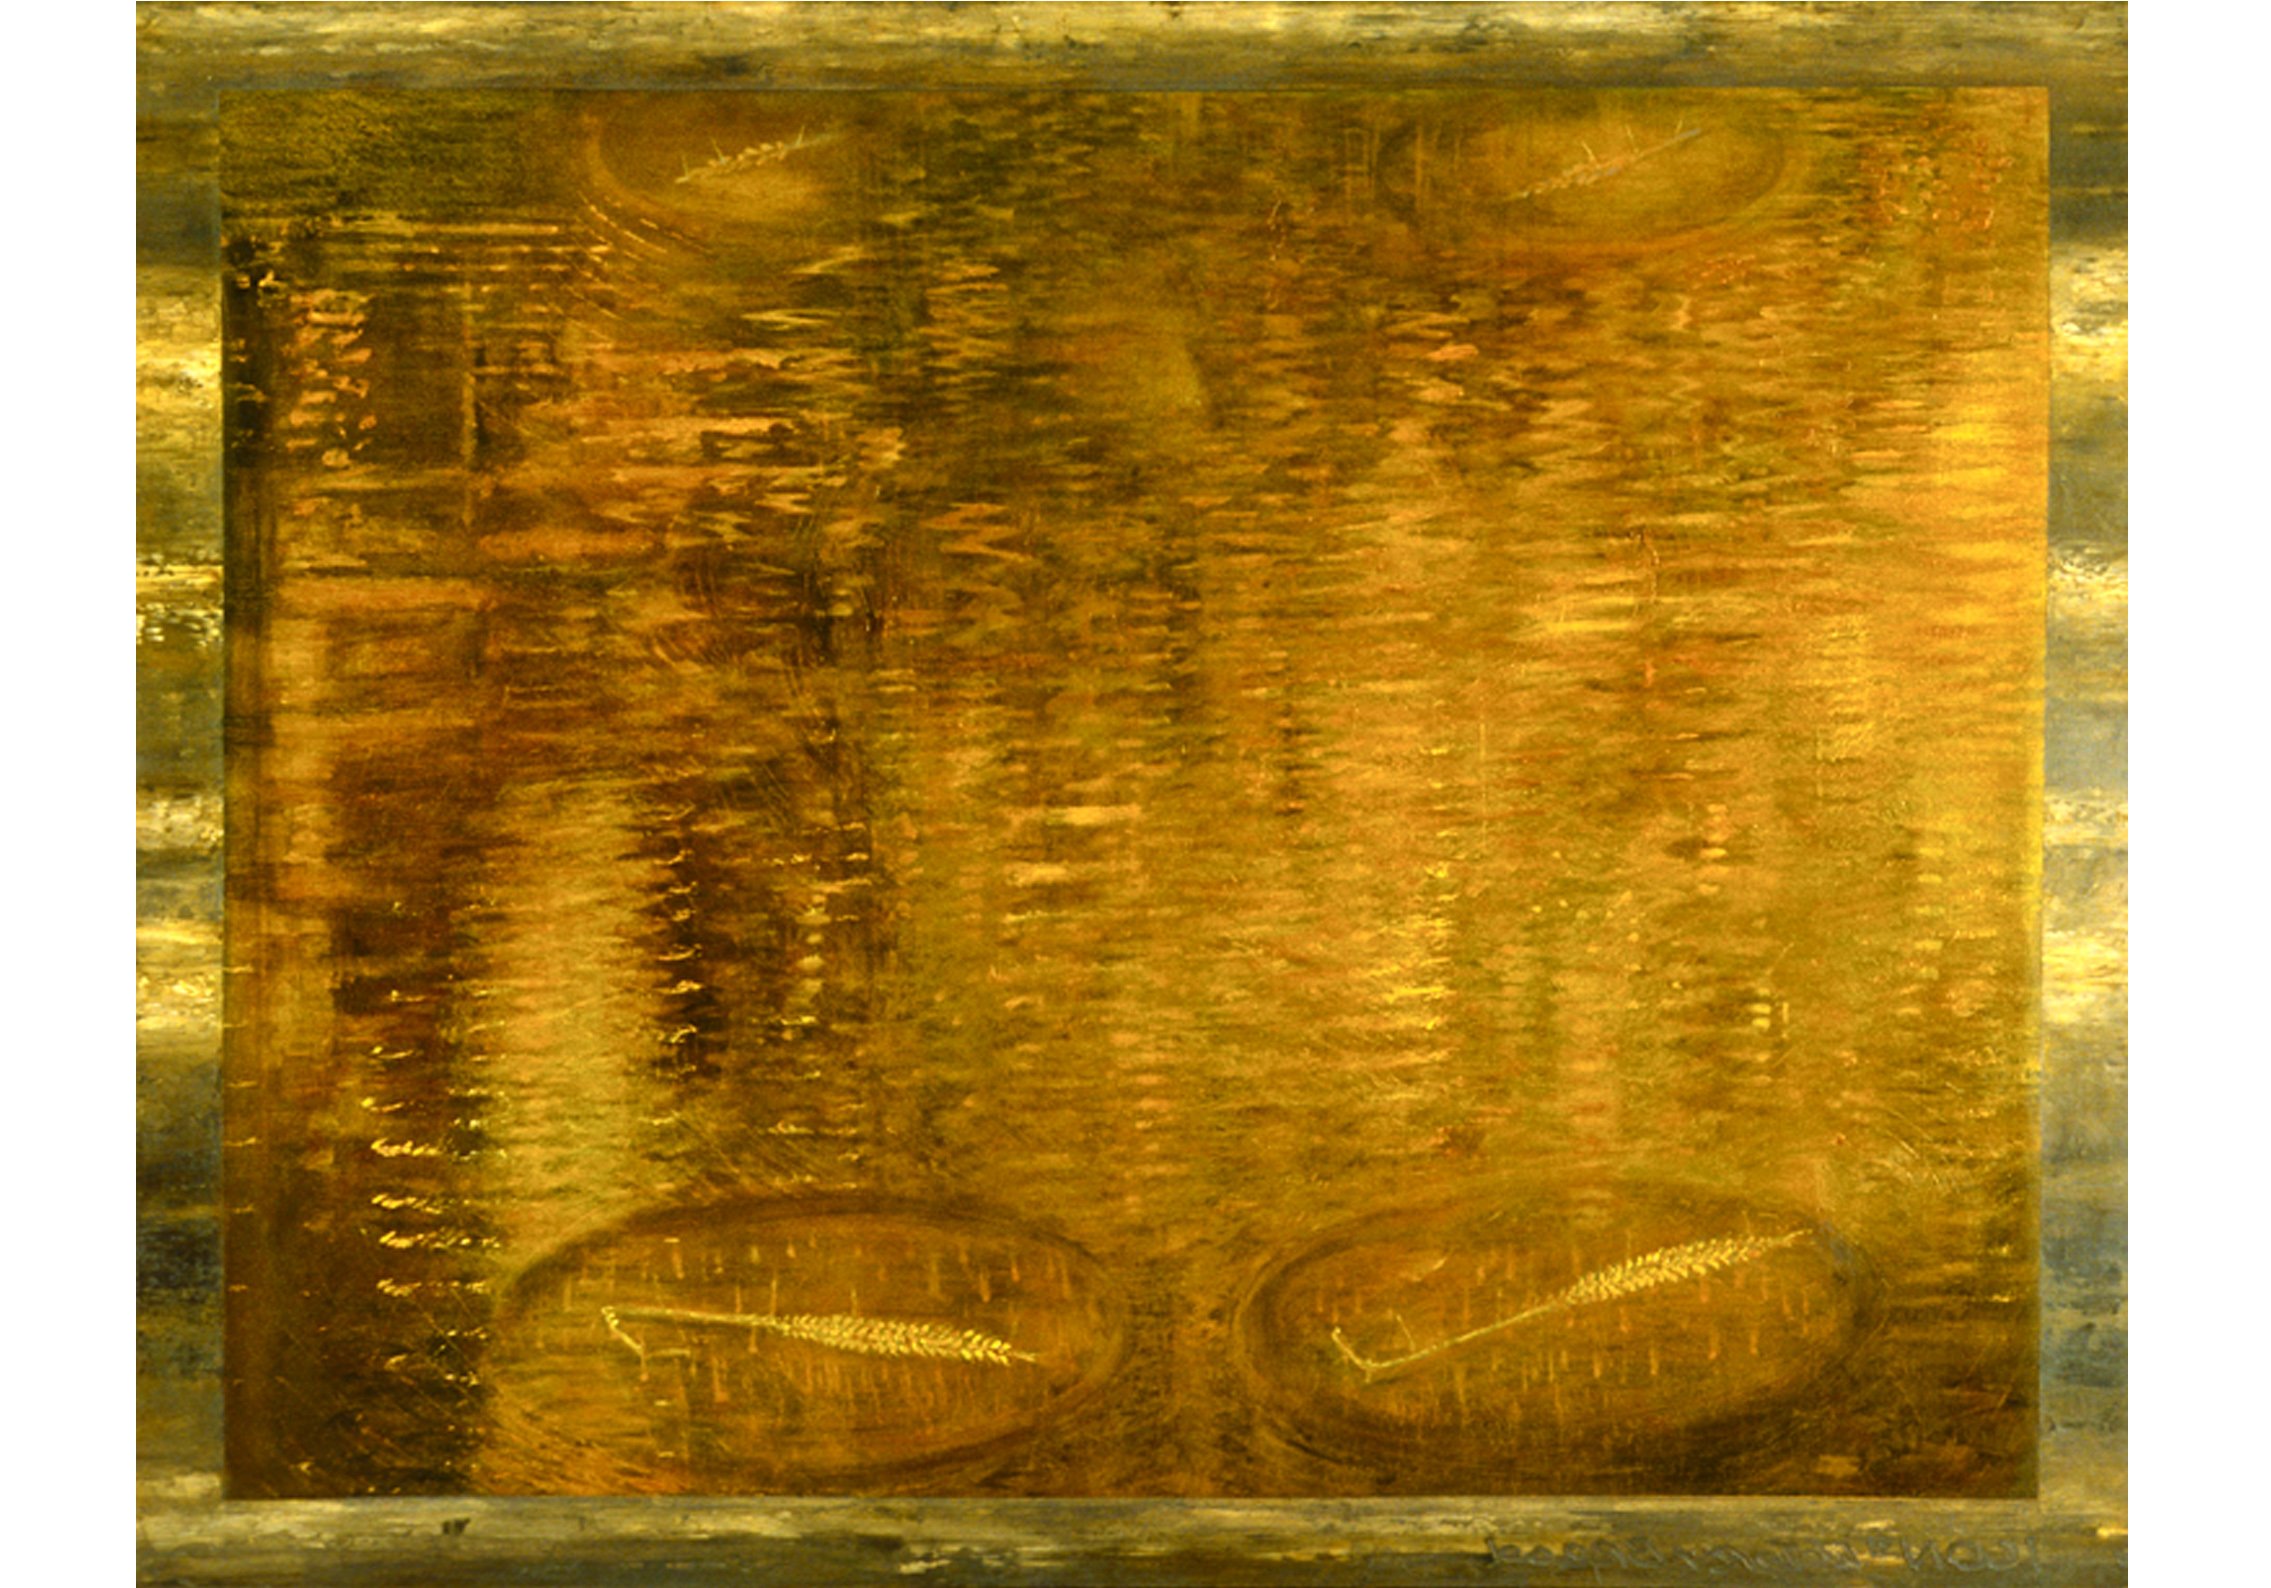  "Fools Gold"  Oil on Canvas 122cm x 91cm   RHA Gallery, Dublin  1990 